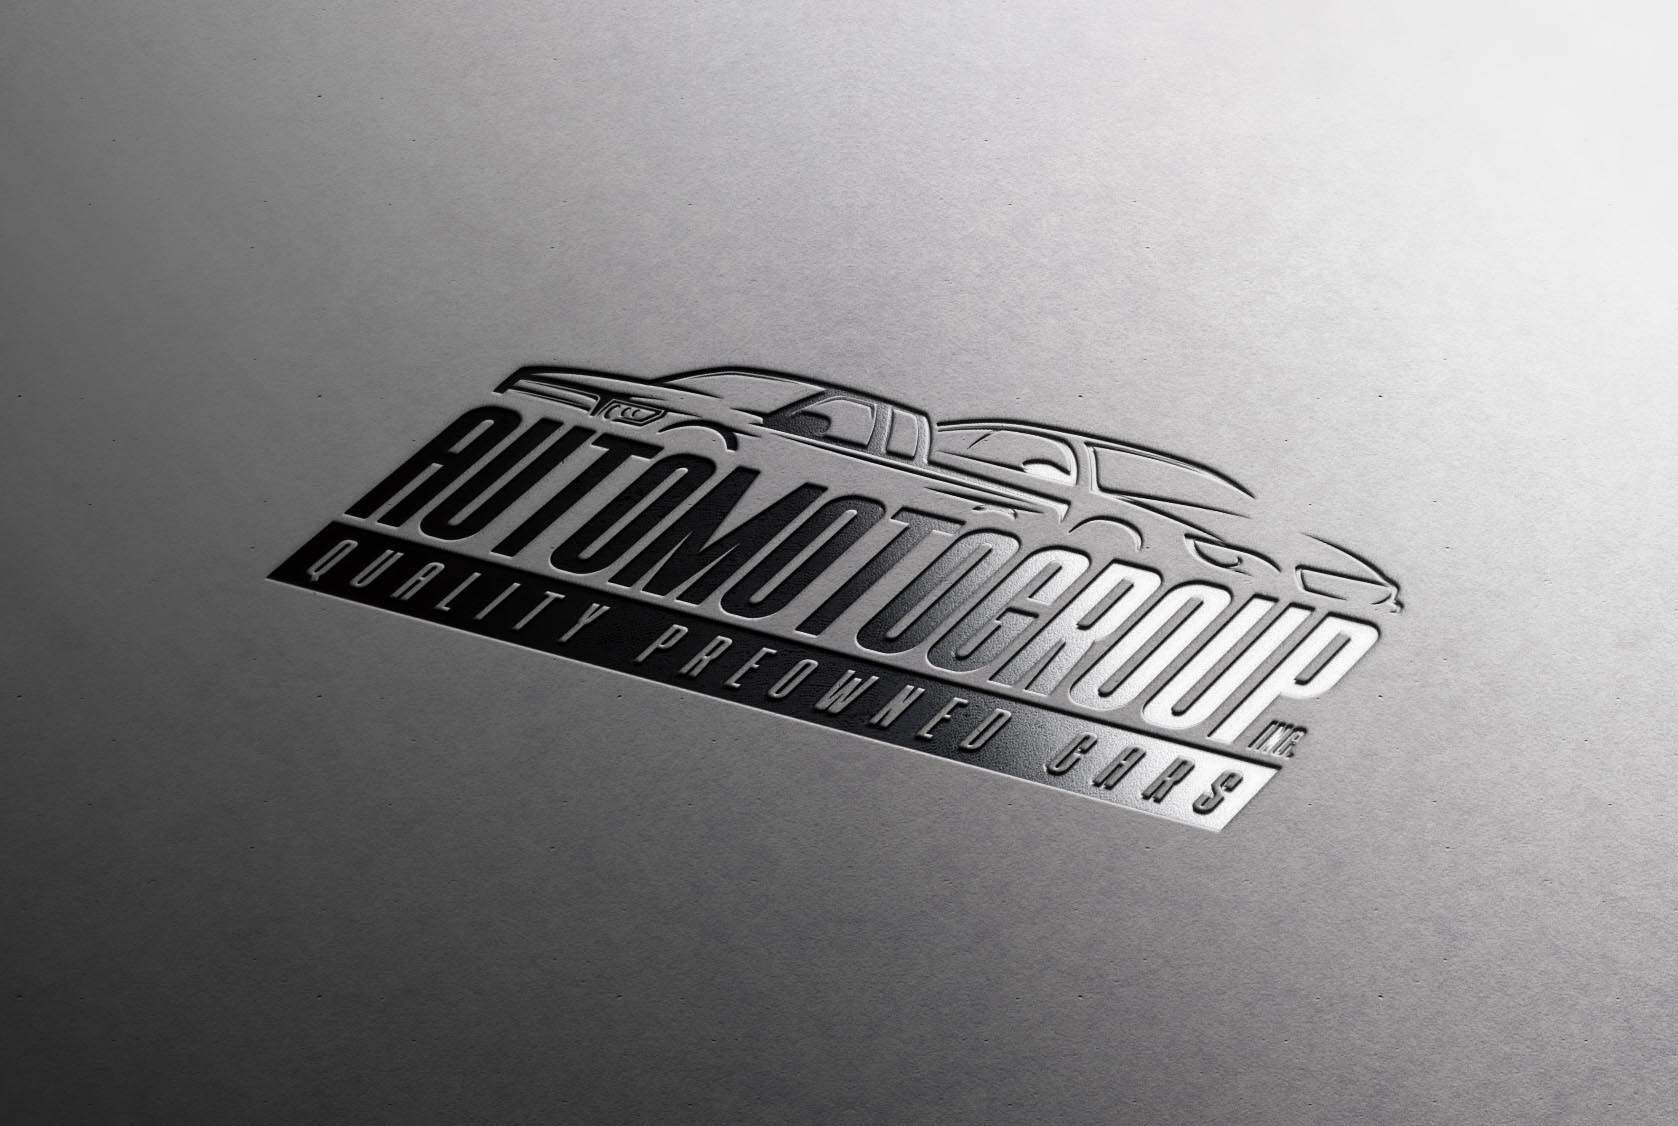 Logo Design For a Car Dealership